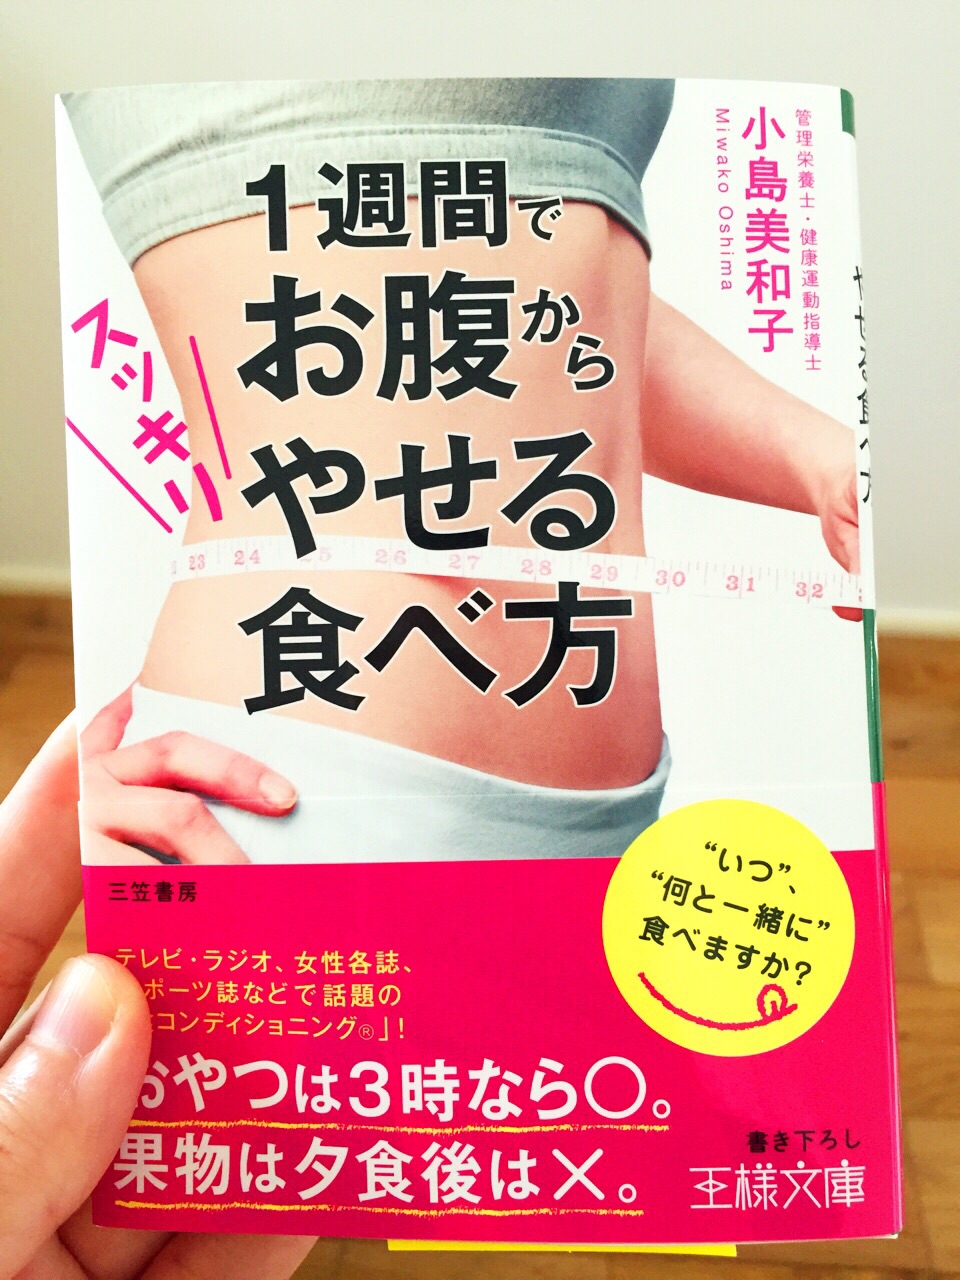 小島美和子さんの講習はとても分かりやすく興味深い内容です。小島美和子さんが出されている本は「1週間でお腹からやせる食べ方」は必見です！